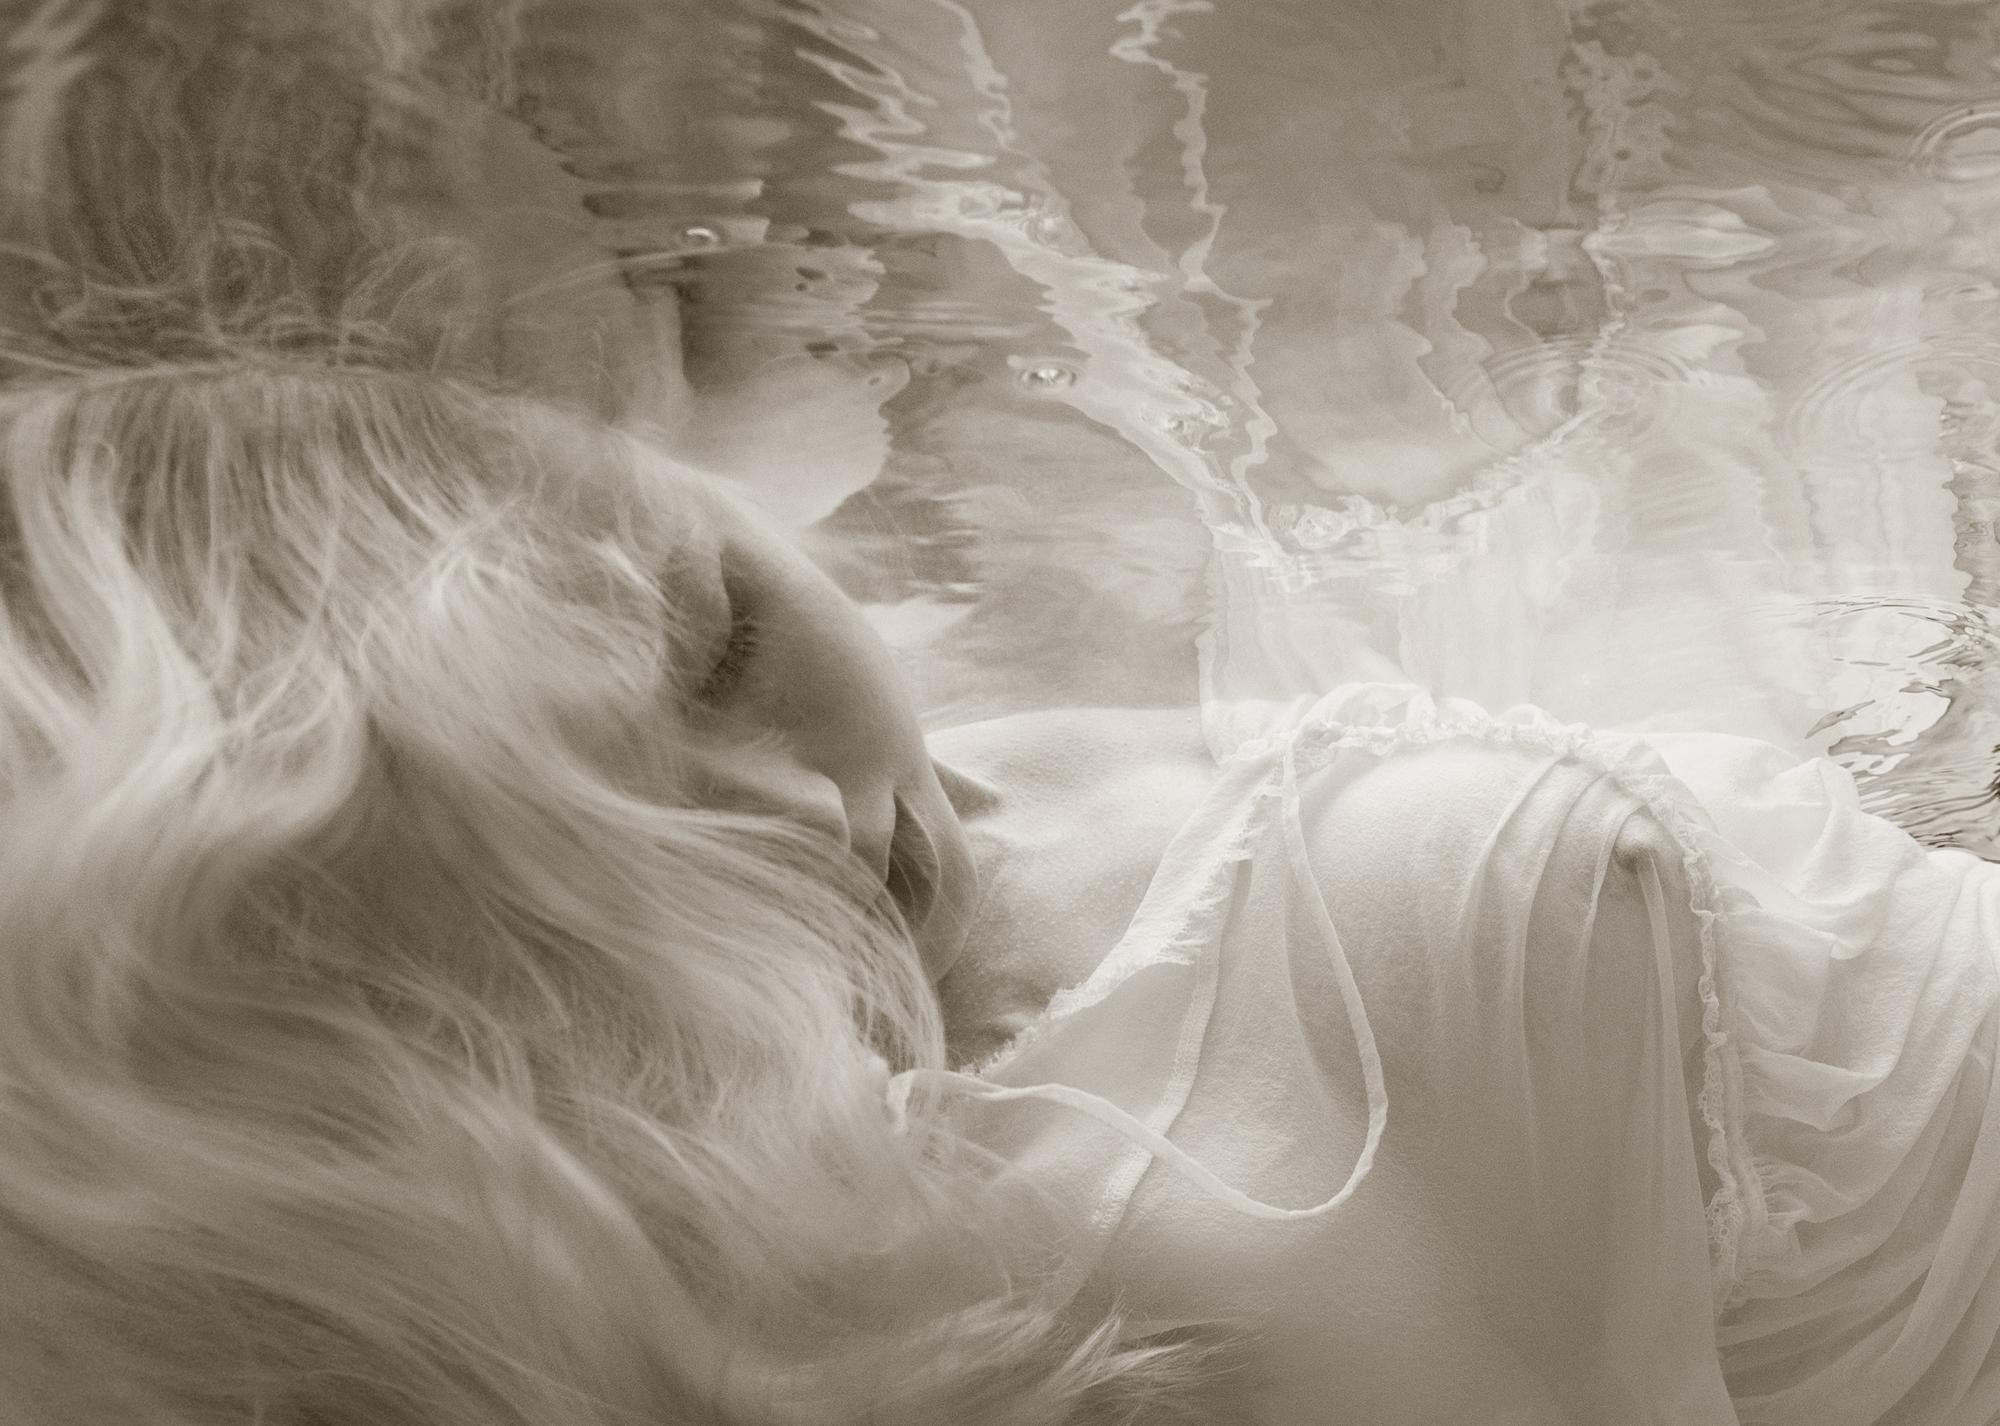 Sweet Dream - photographie de nu sous-marine - impression sur papier 18" x 24"